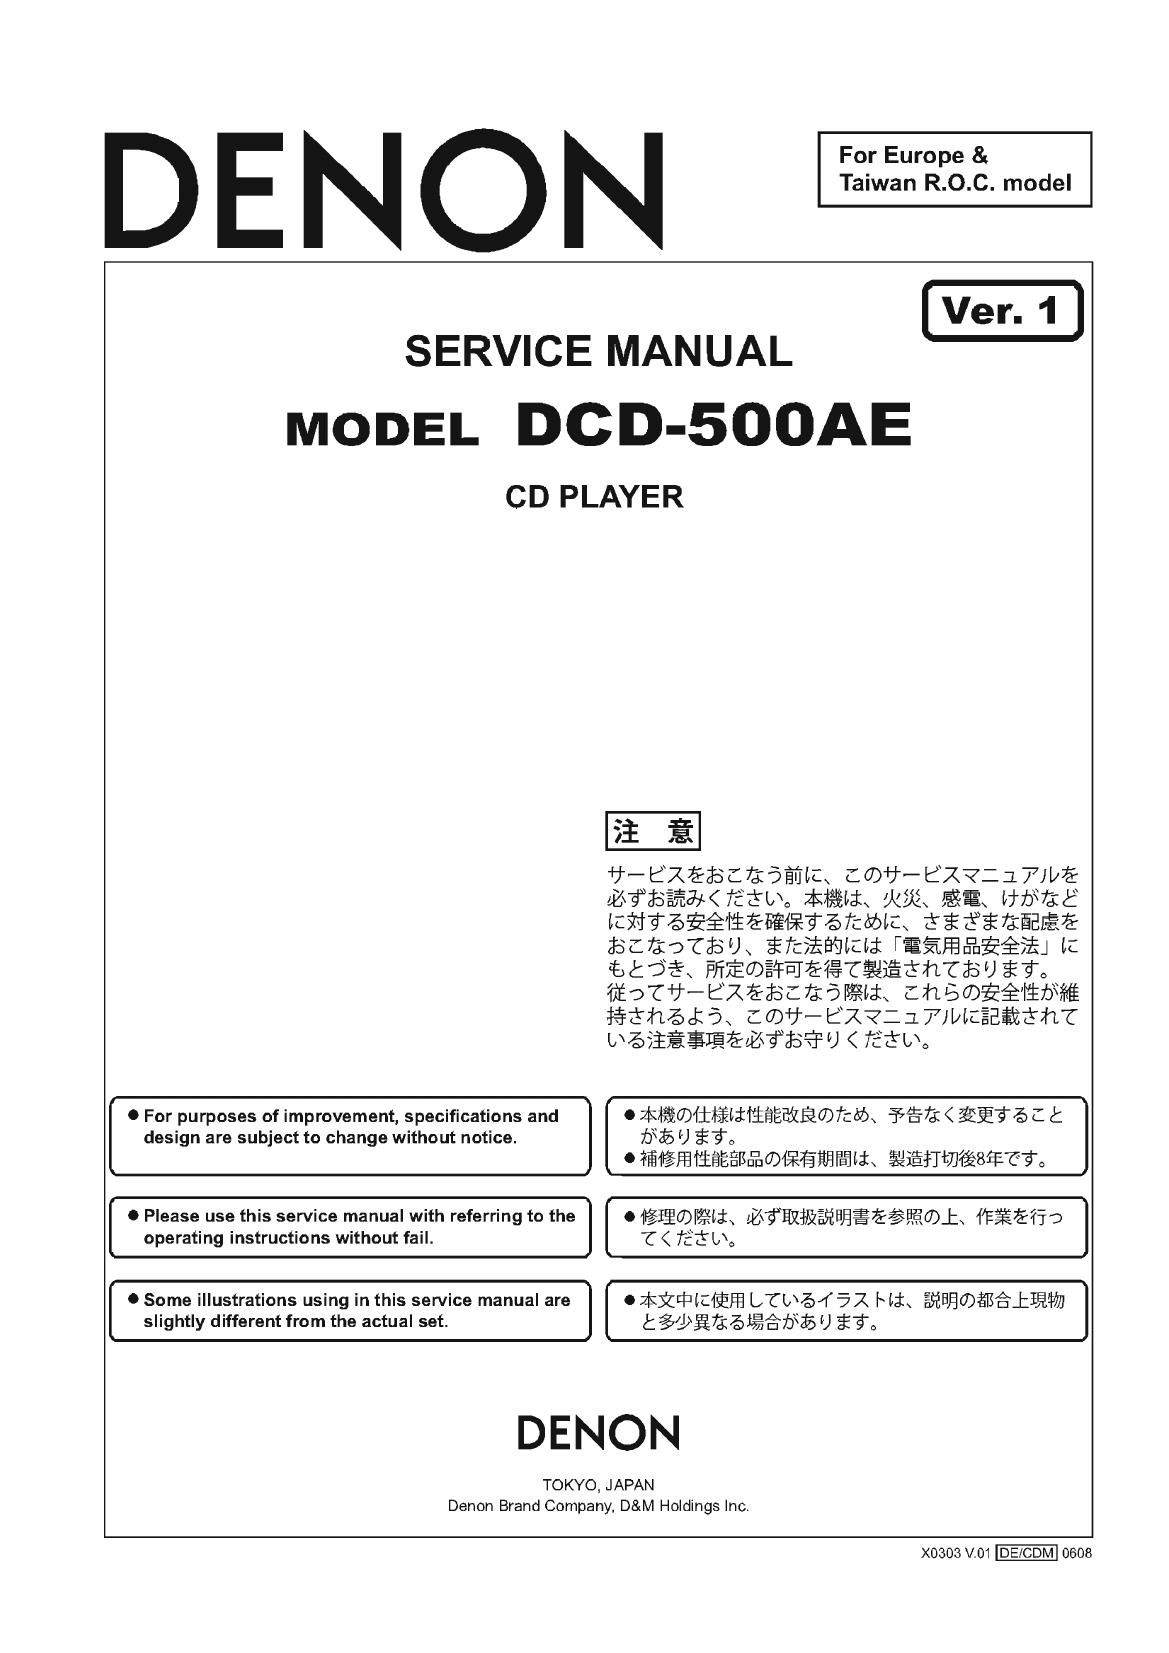 Denon DCD 500AE Service Manual